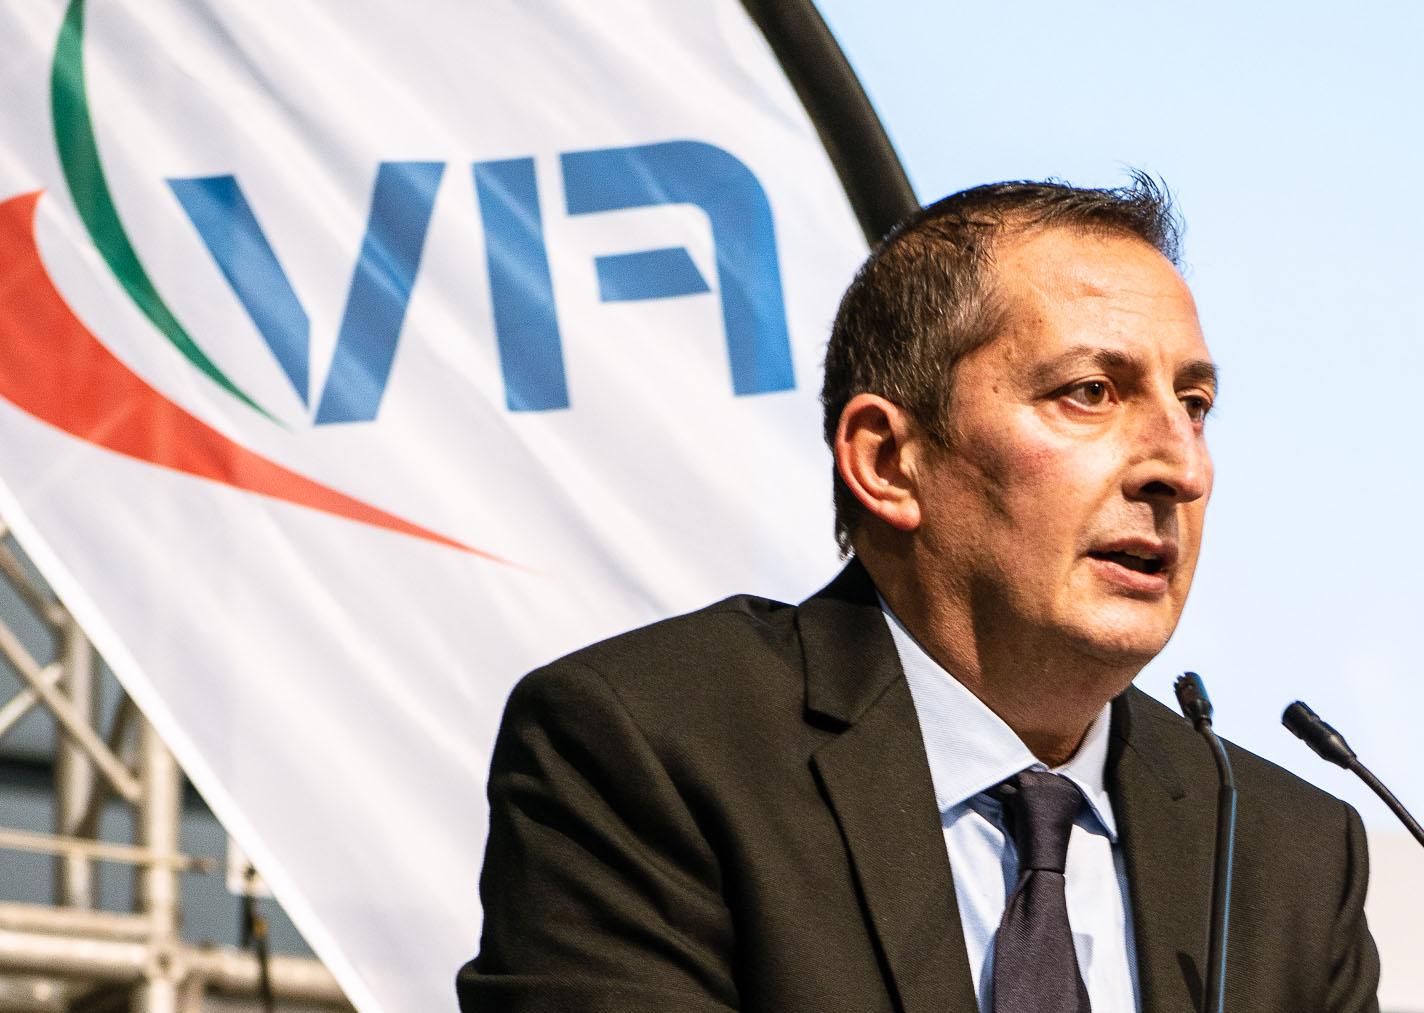 Il Presidente FIV Francesco Ettorre: Sono felice per i nostri atleti